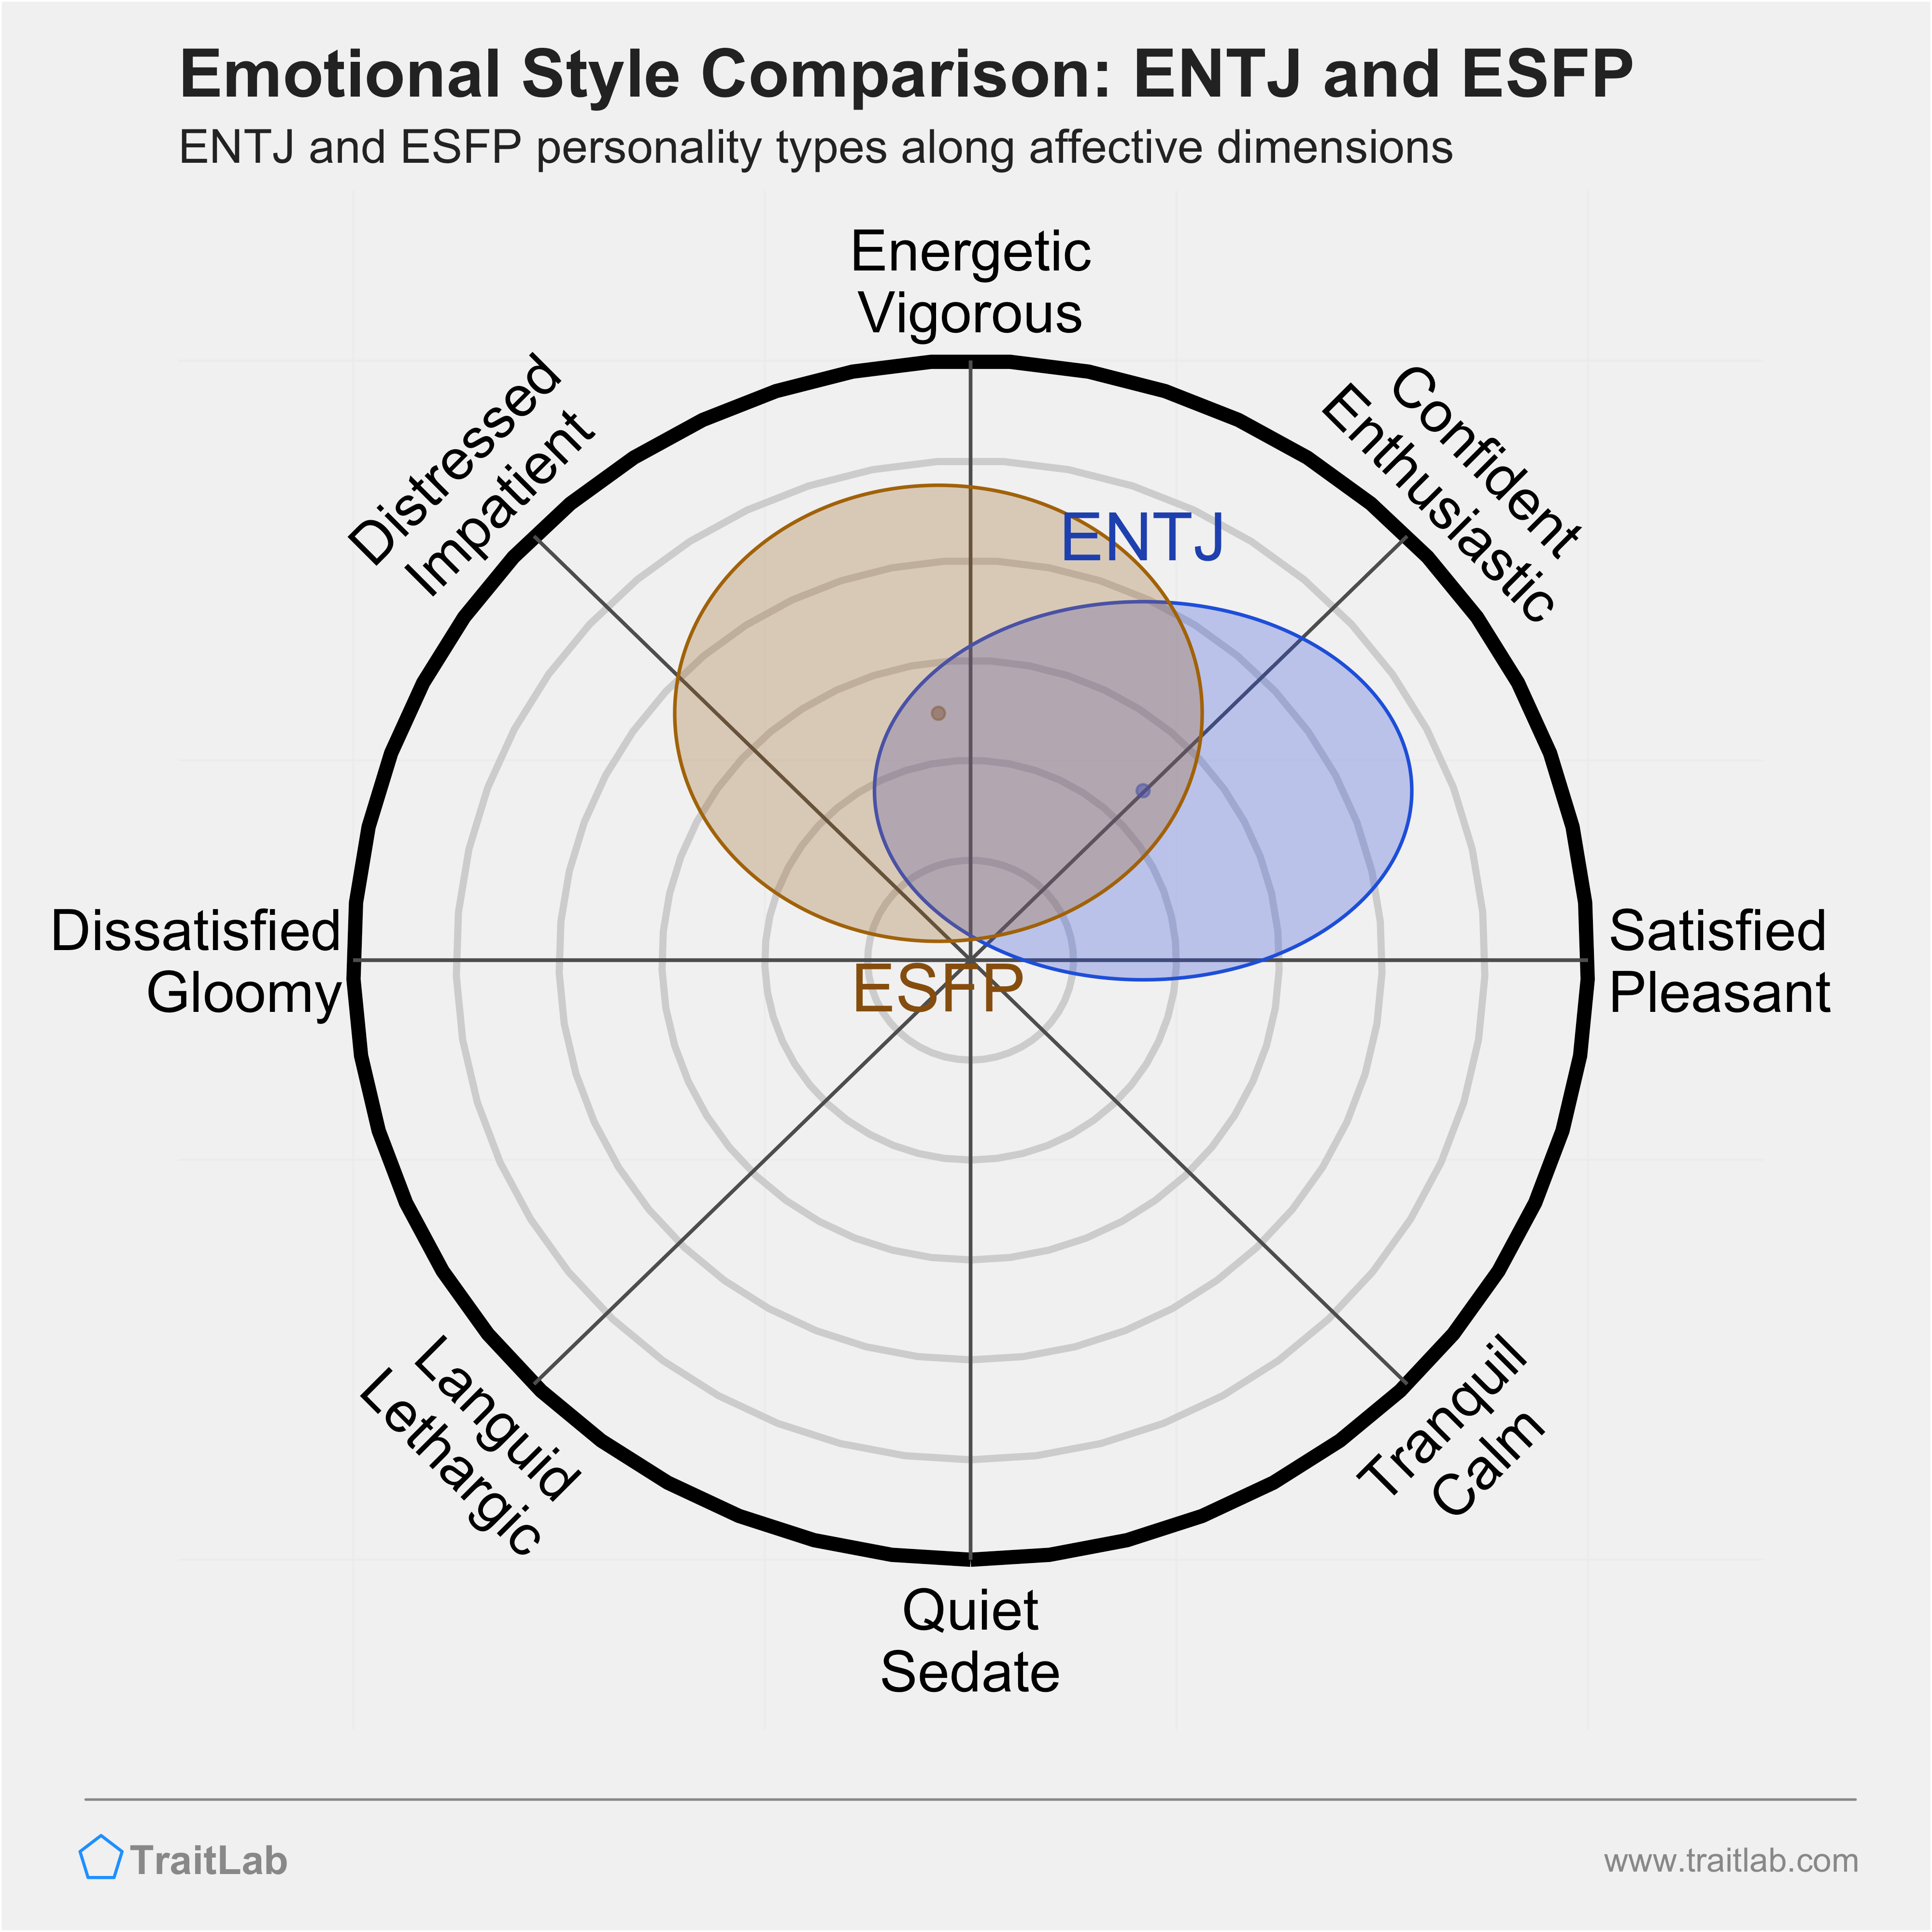 ENTJ and ESFP comparison across emotional (affective) dimensions